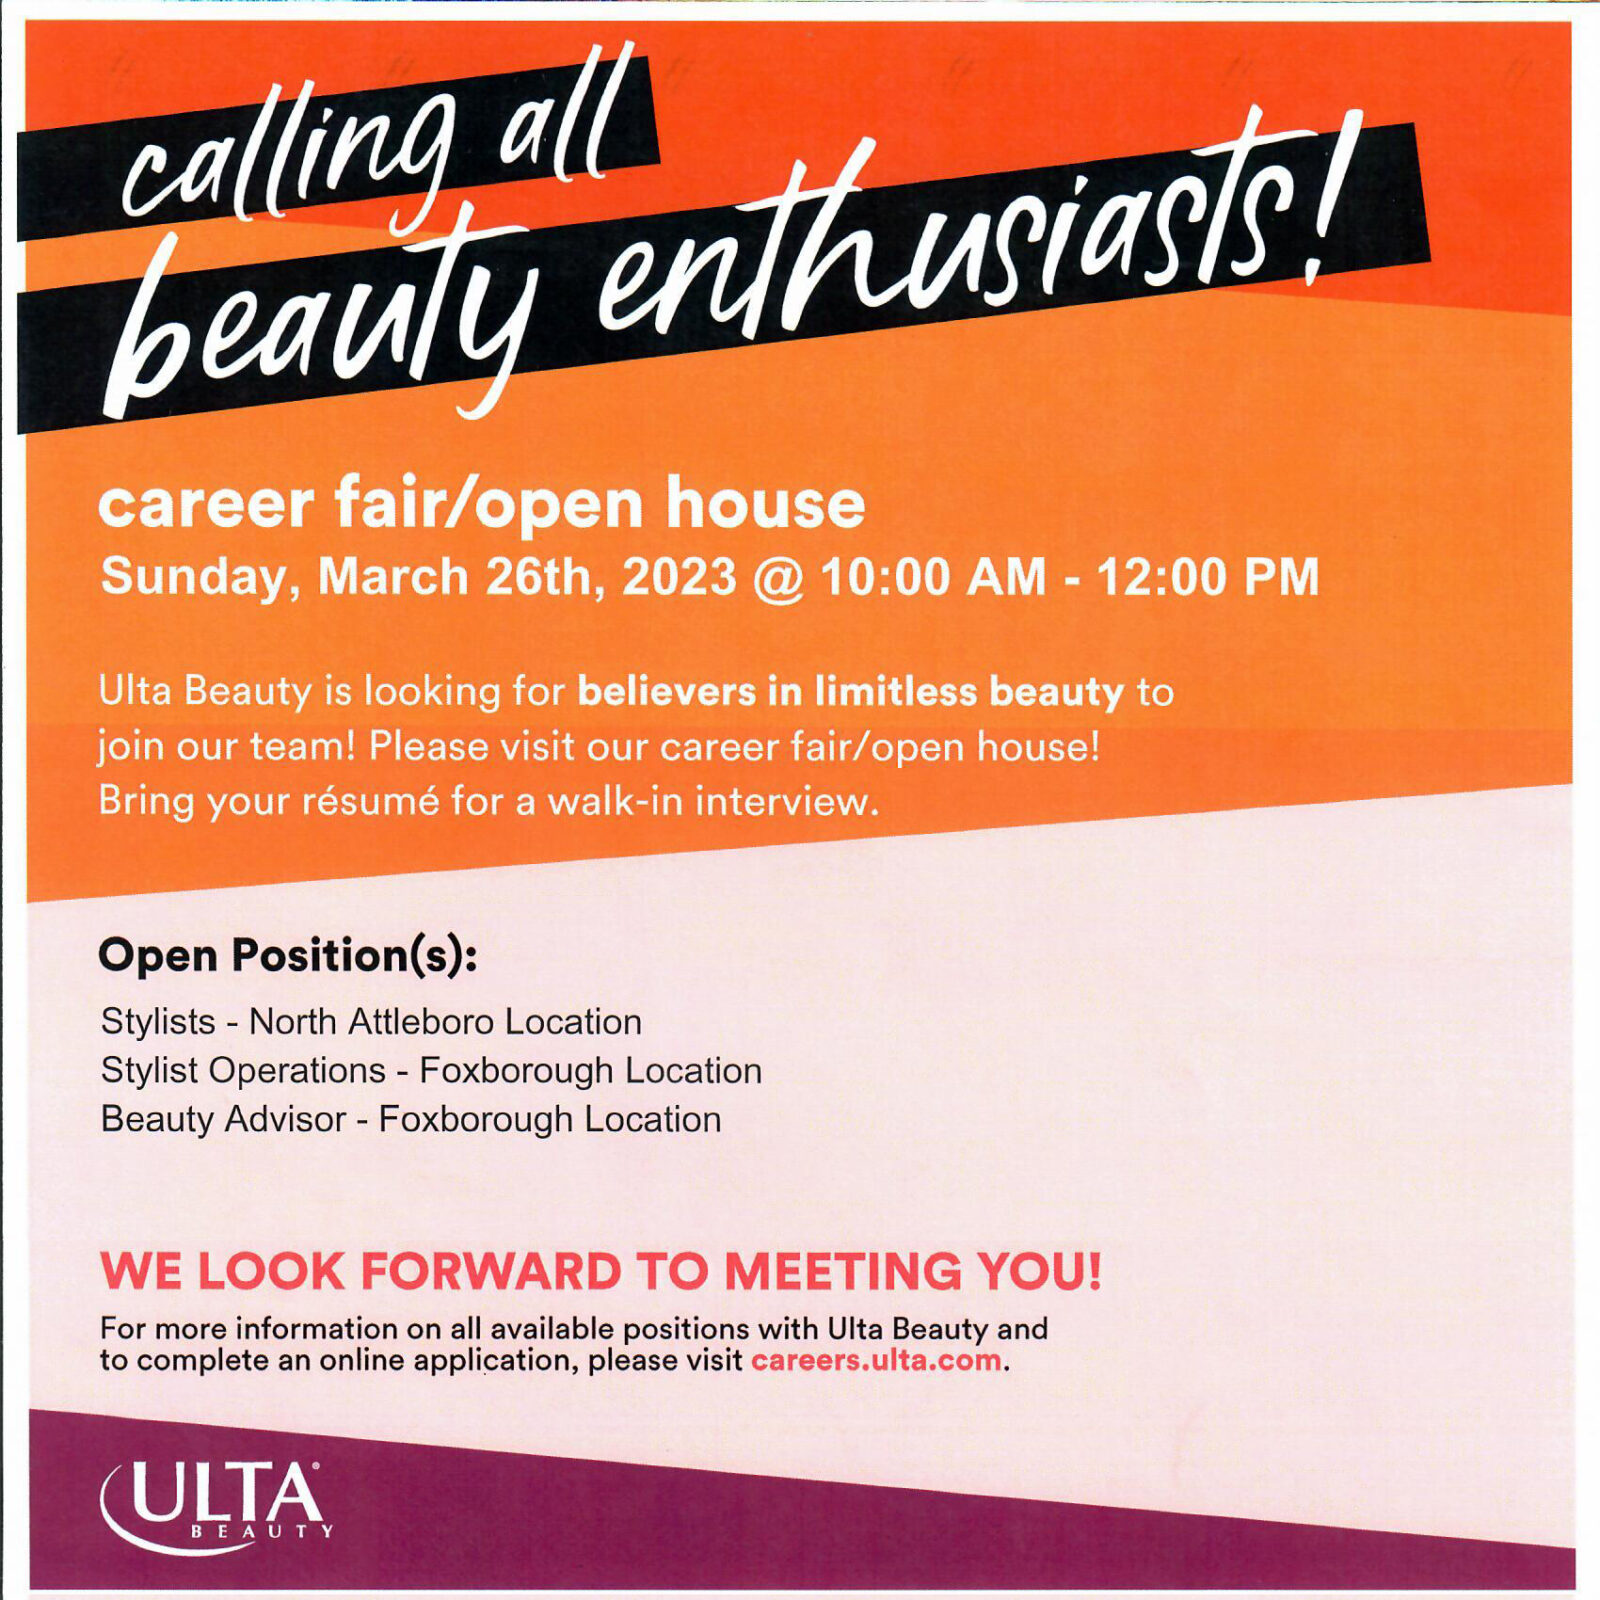 Ulta Beauty career fair open house